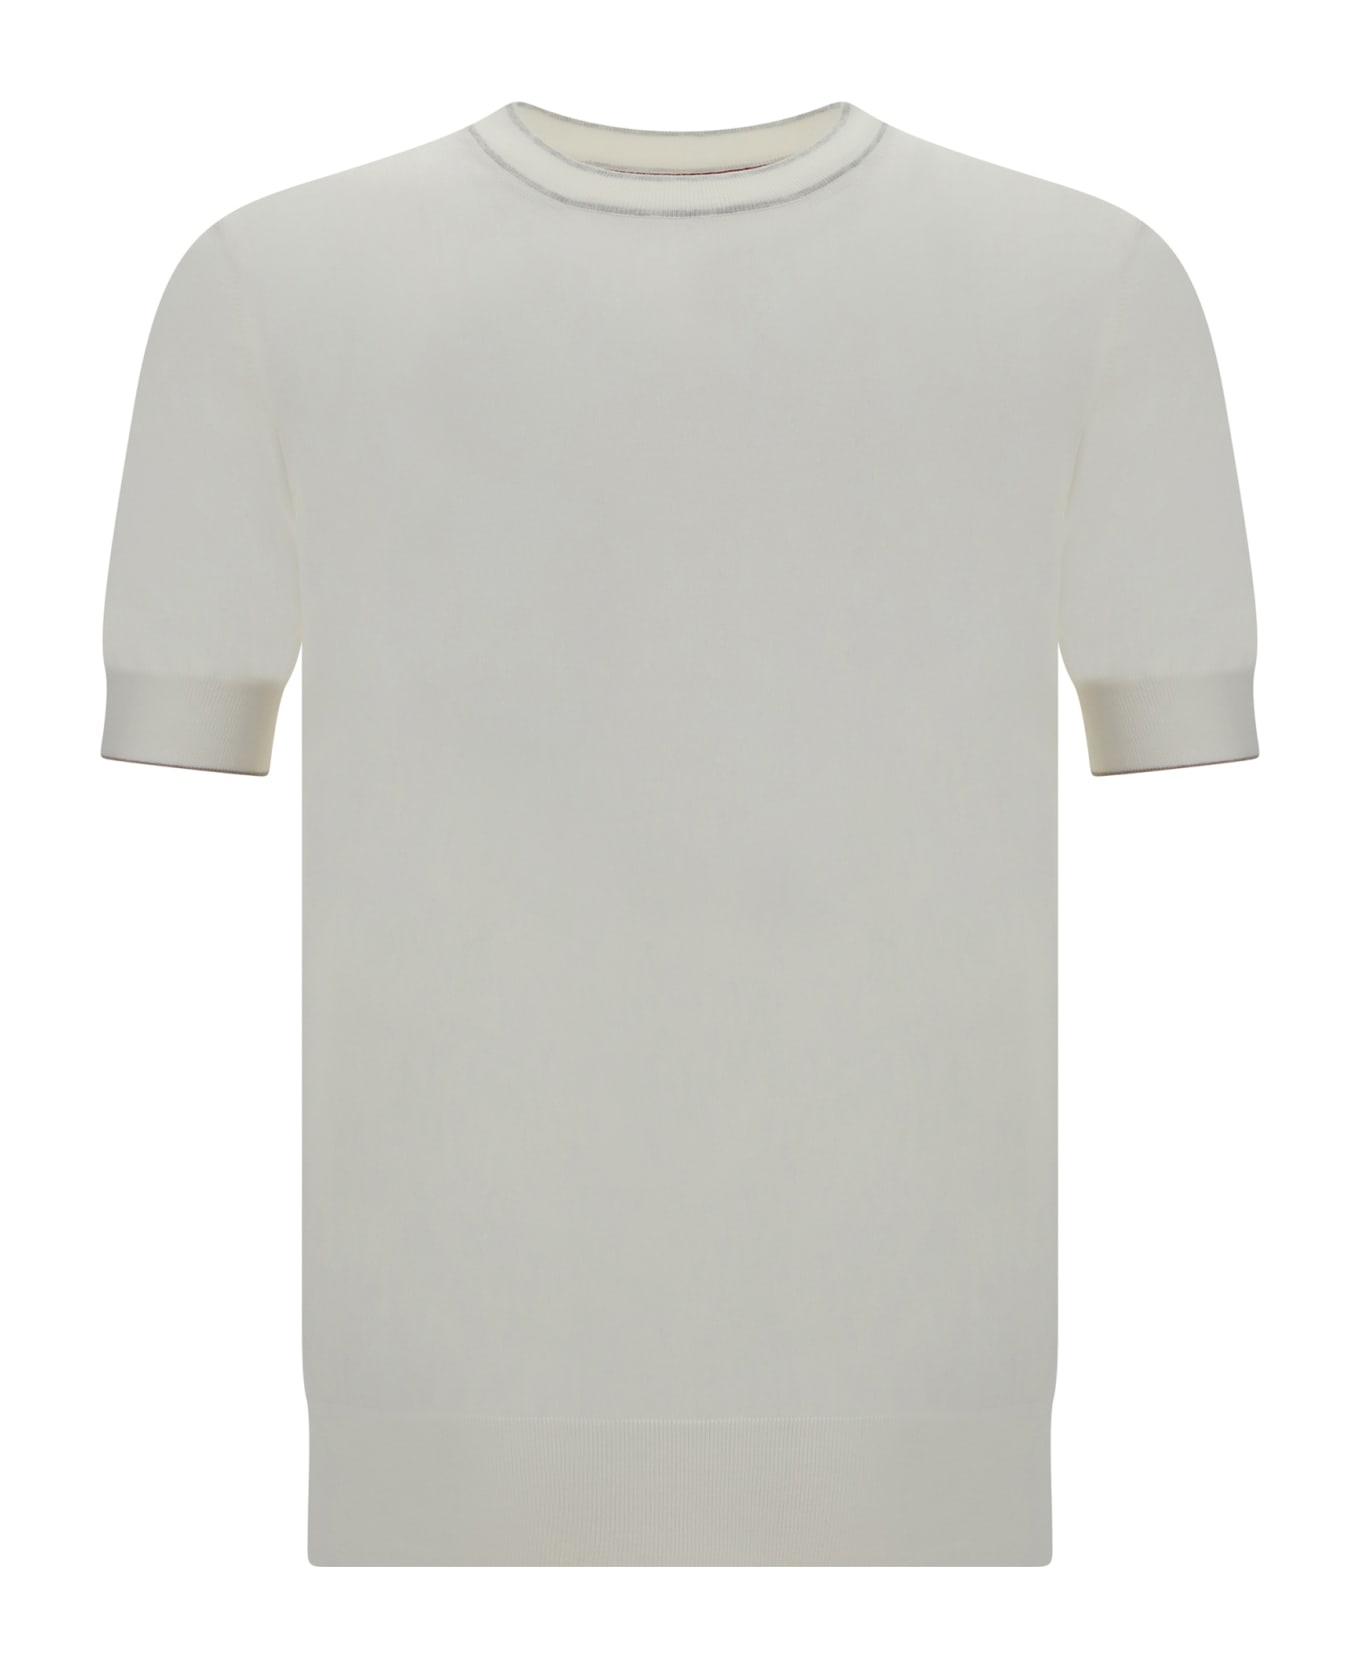 Brunello Cucinelli Cotton Knit T-shirt - Panama+nebbia+creta シャツ